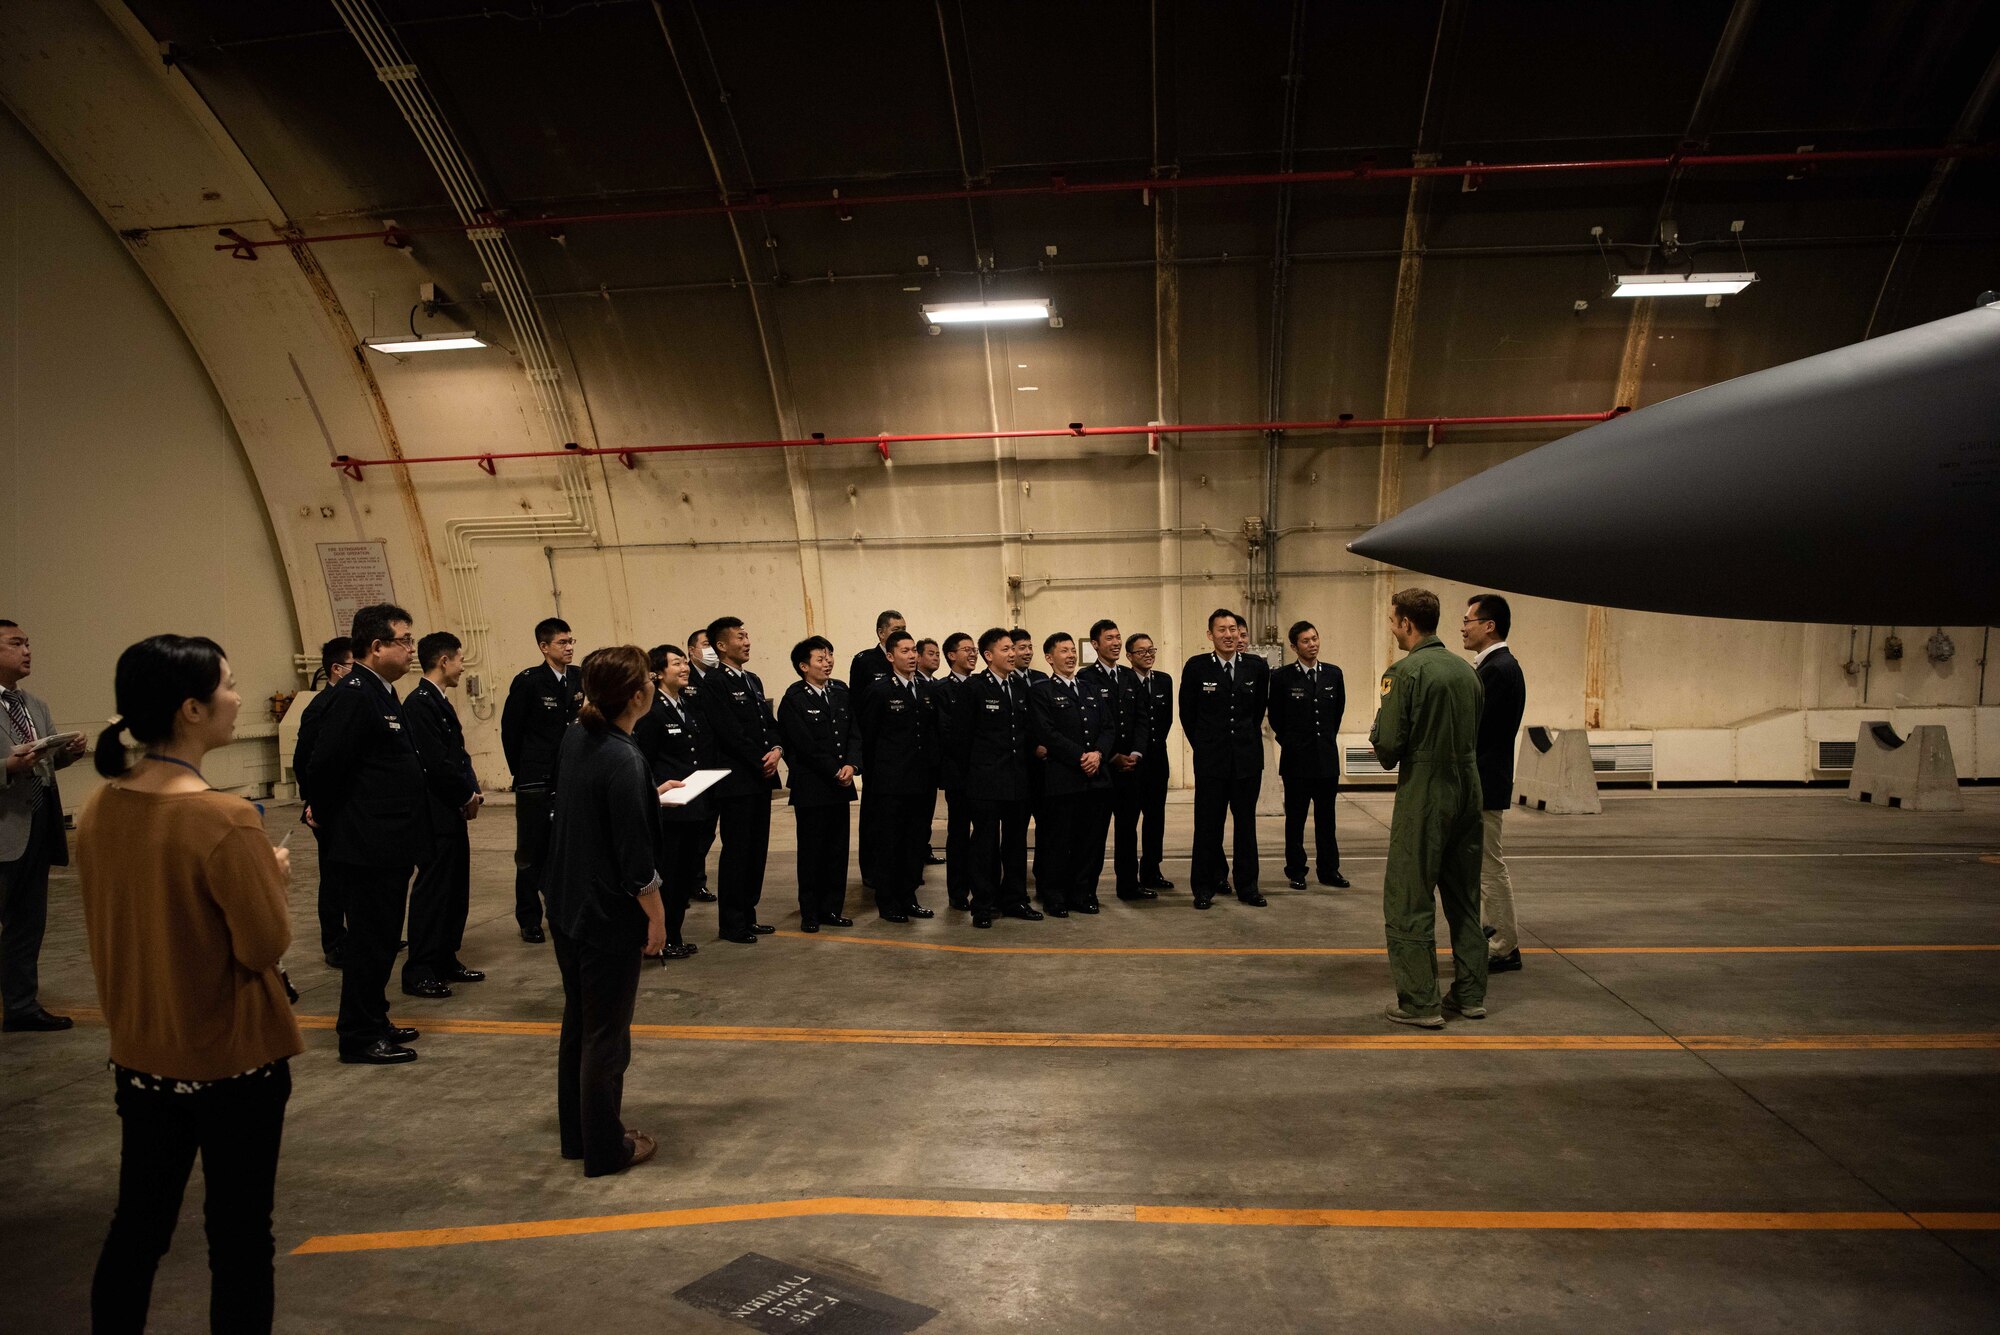 JASDF Cadets visit Team Kadena